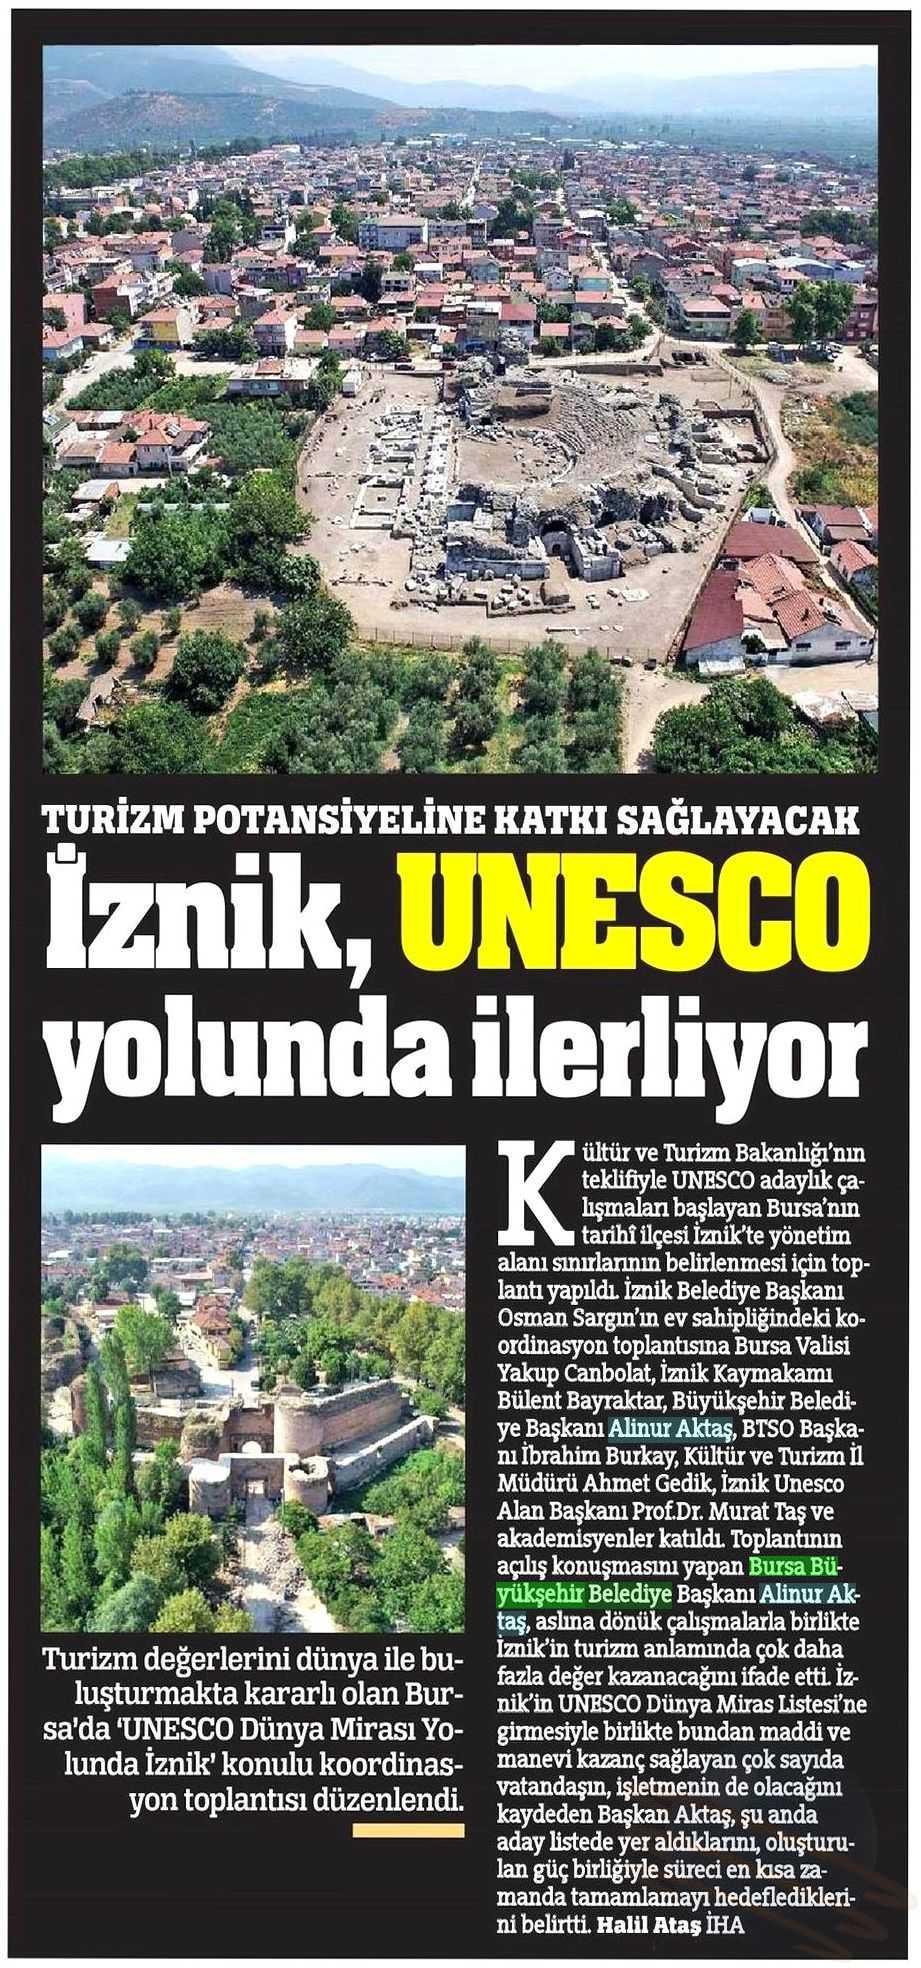 IZNIK, UNESCO YOLUNDA ILERLIYOR Yayın Adı : Türkiye Gazetesi